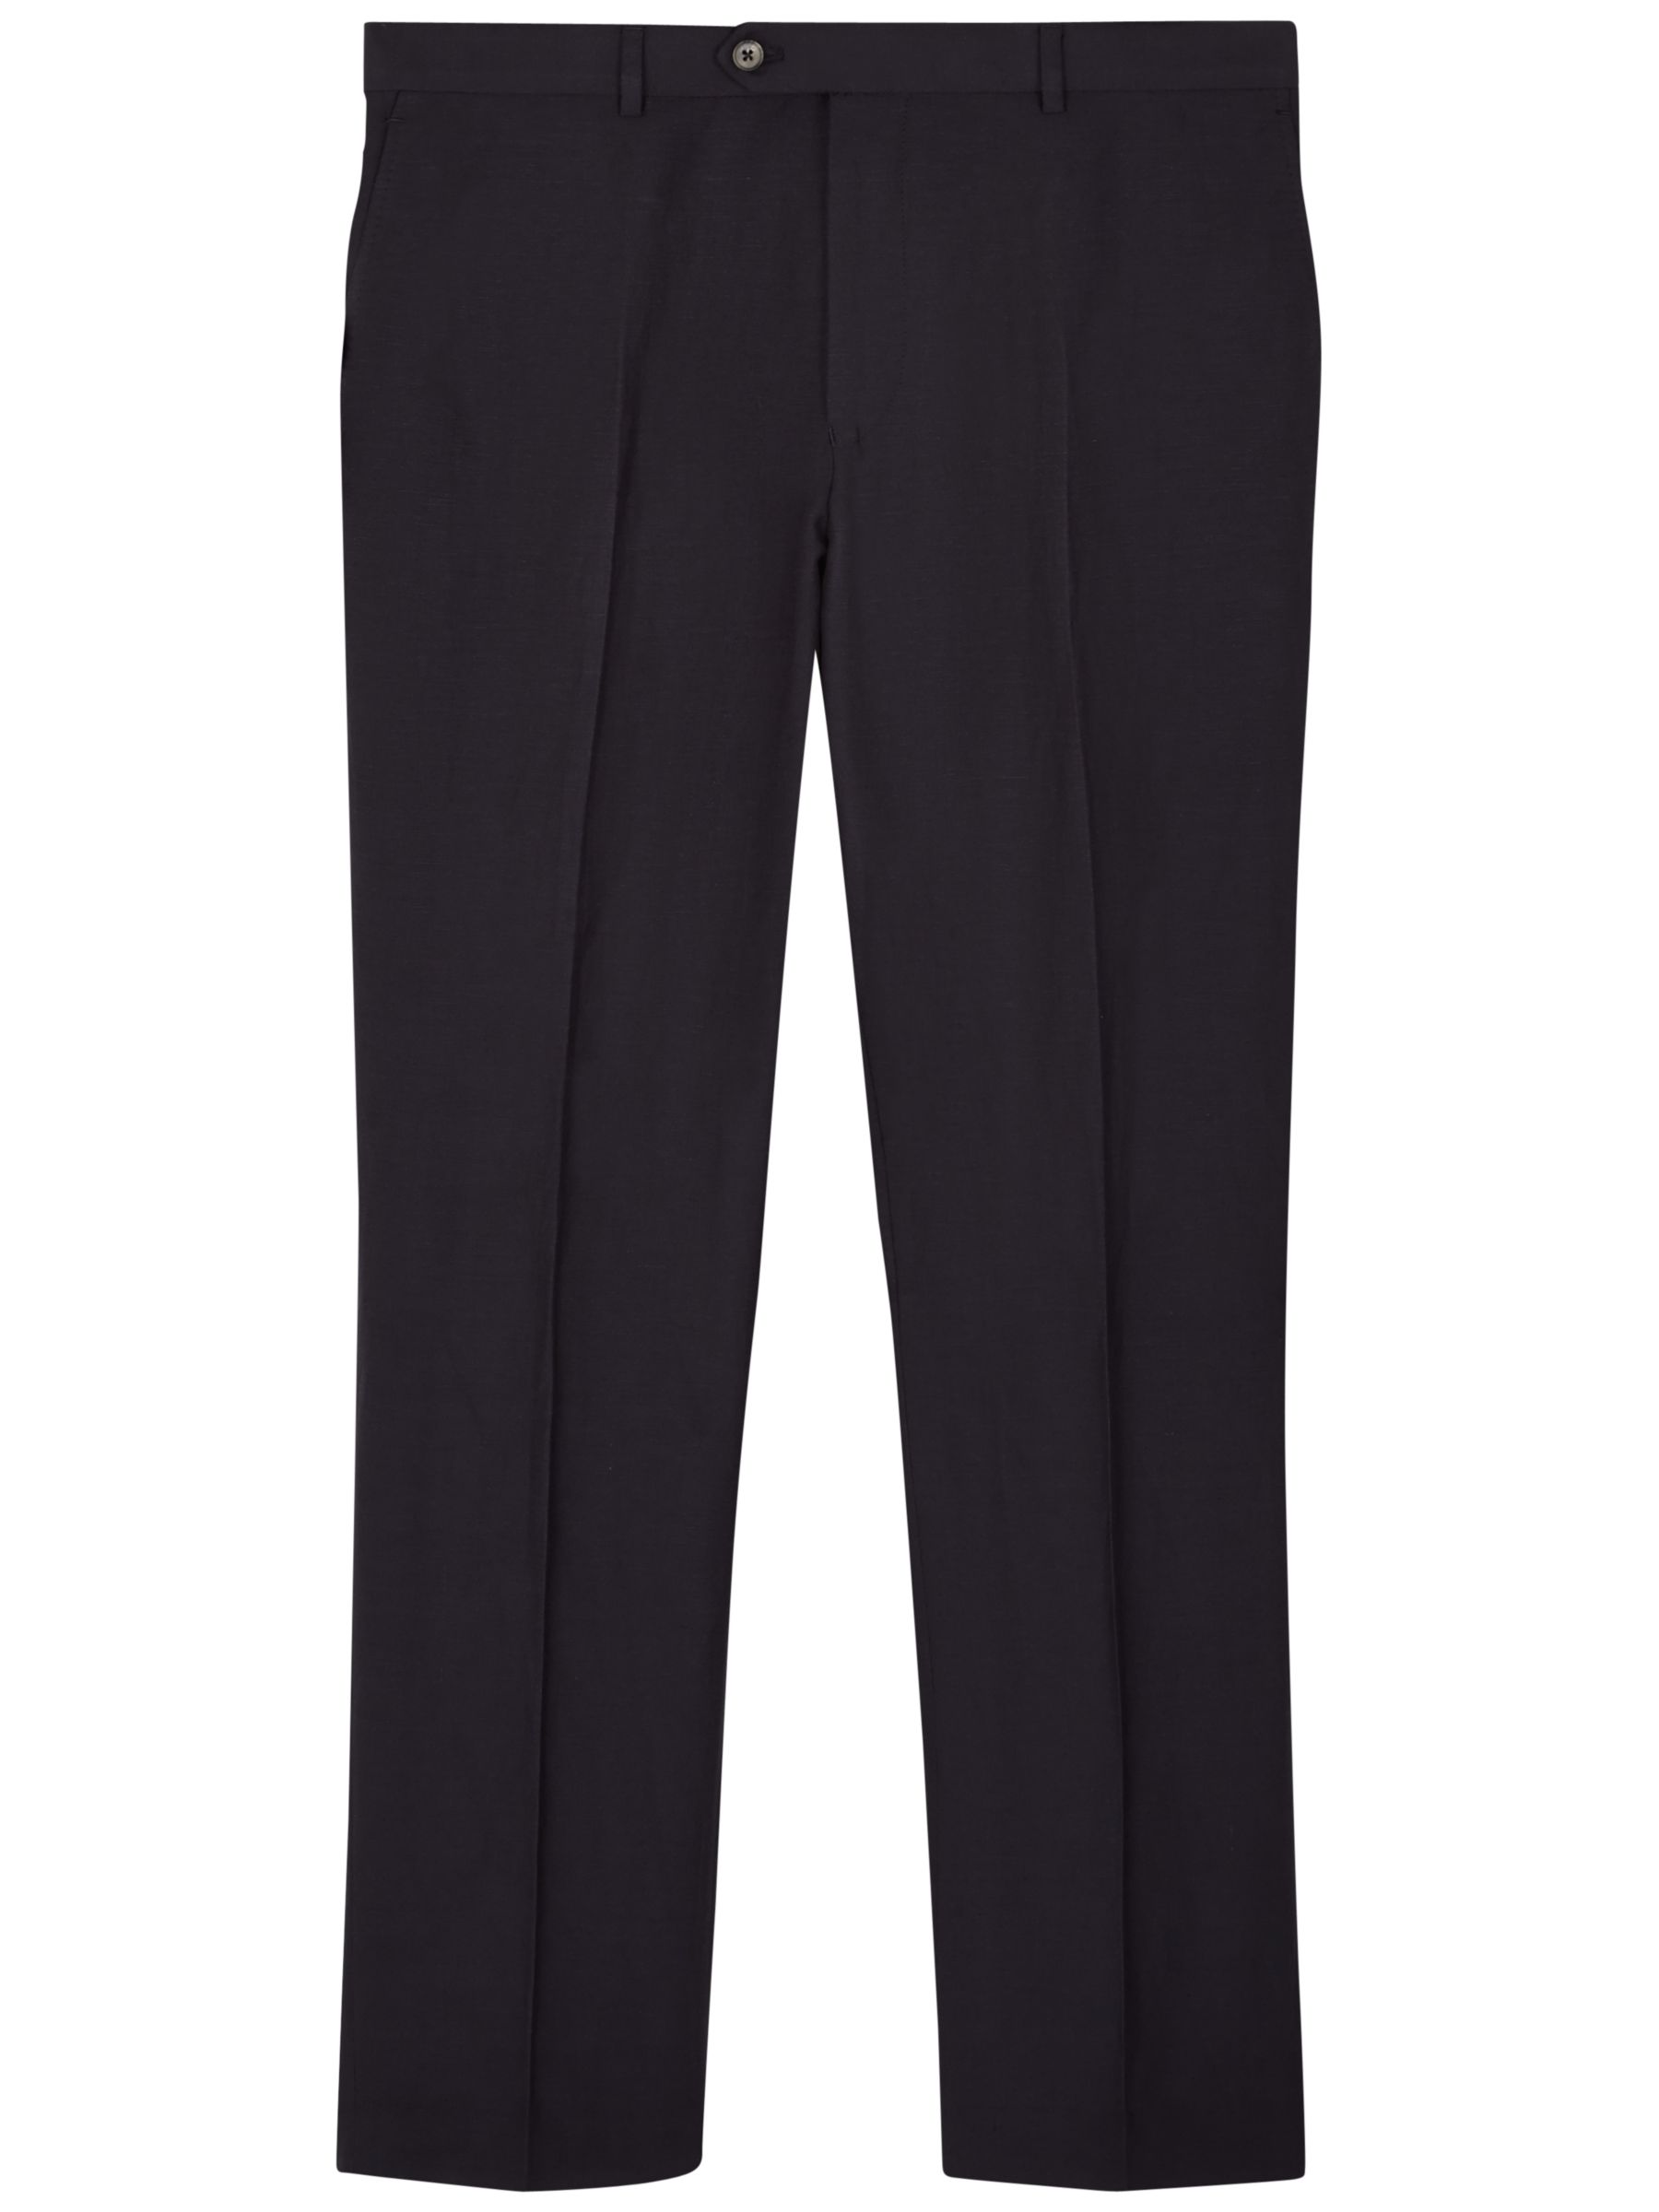 Jaeger Silk Linen Modern Suit Trousers, Navy